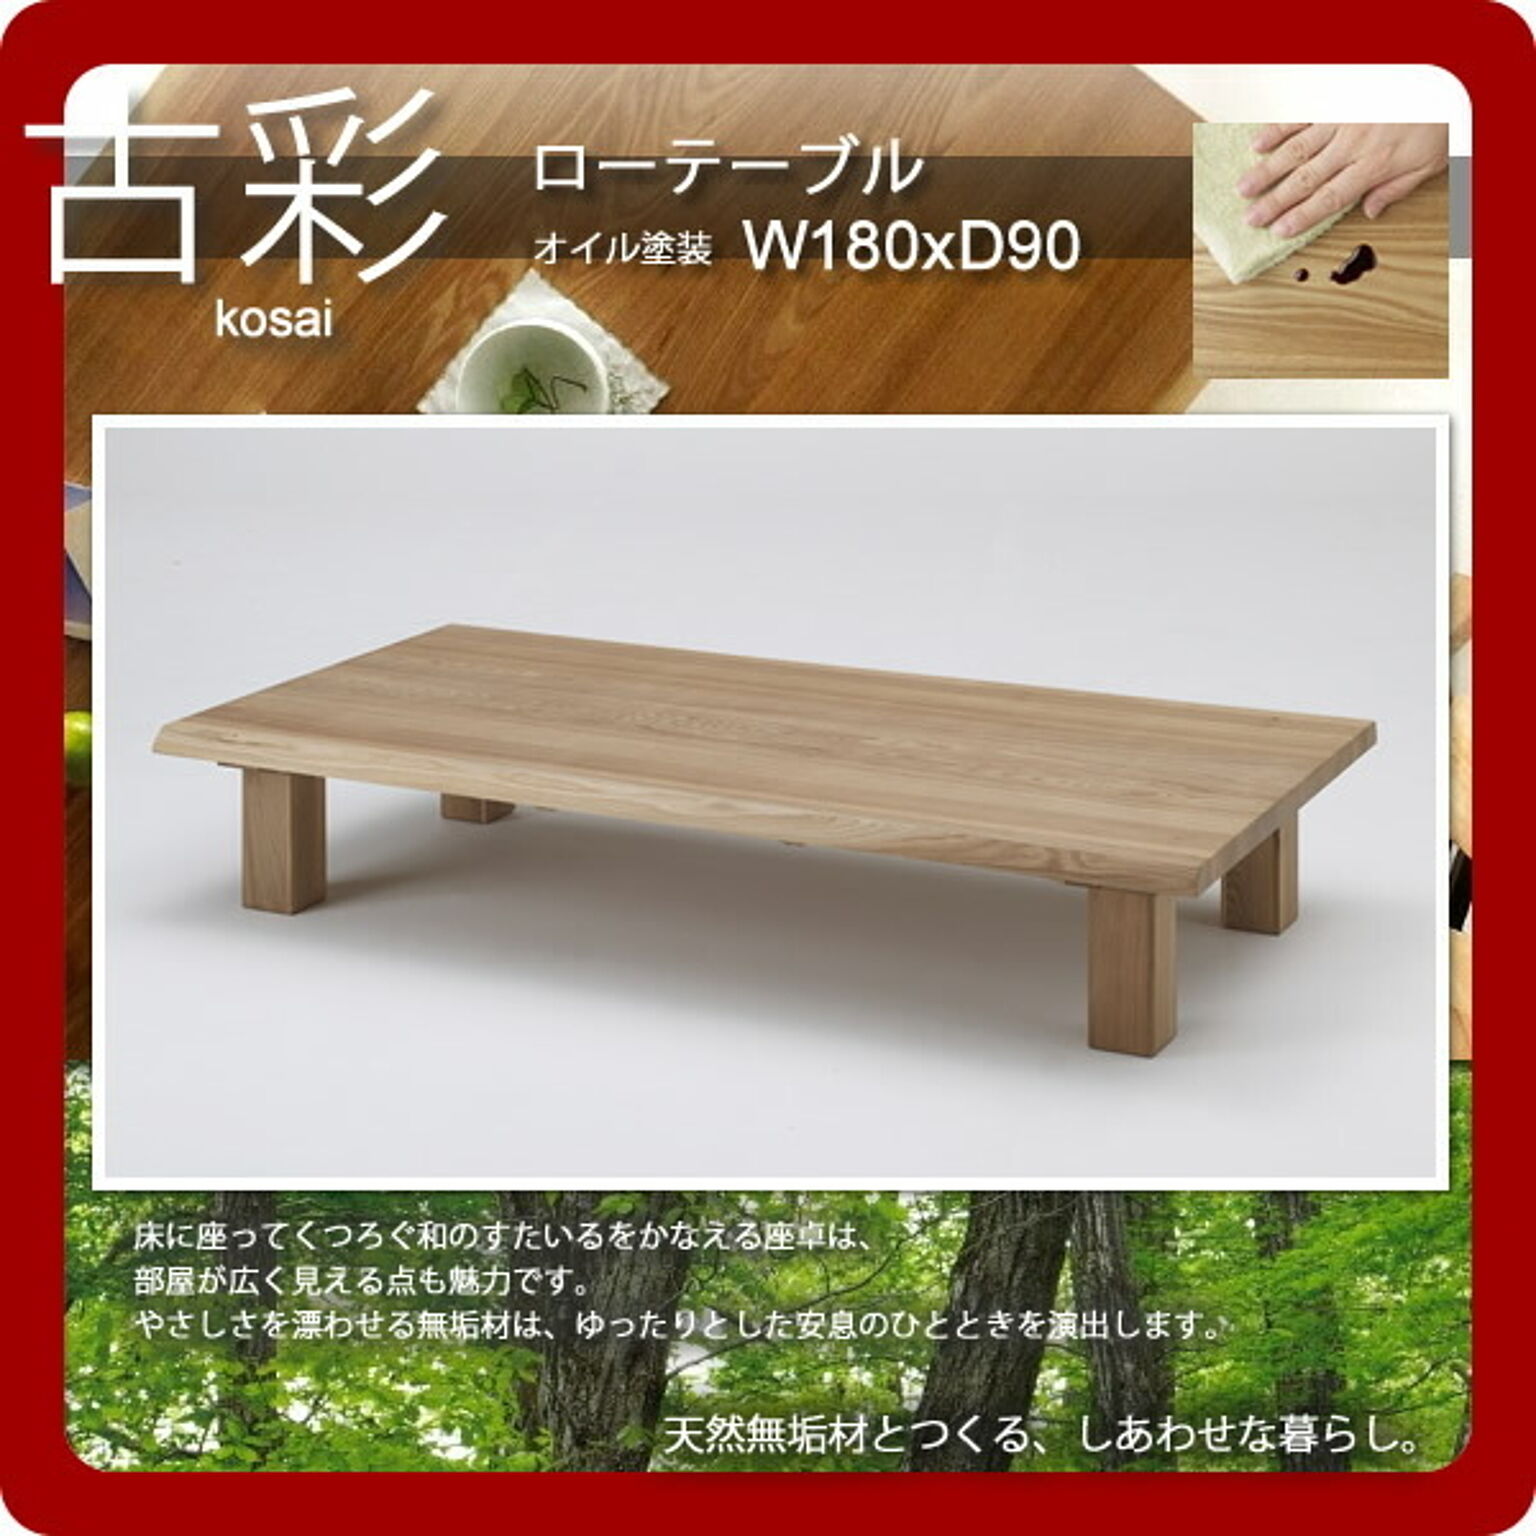 人にも環境にもやさしい家具シリーズ【古彩】★ローテーブルKO-Z180オイル塗装 W180ｘD90座卓  